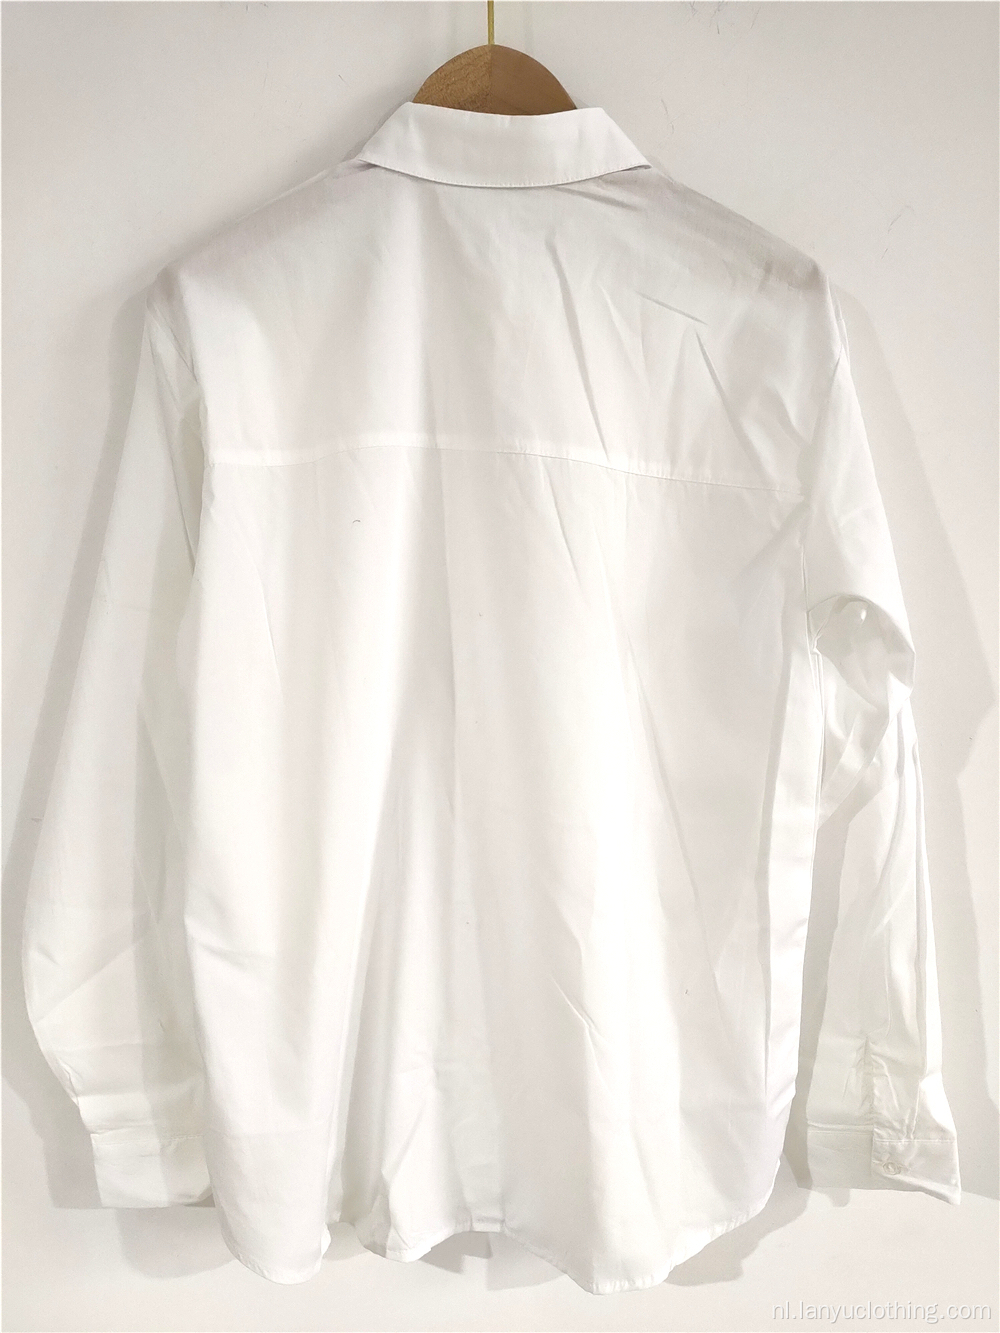 Zuiver wit overhemd met staande kraag voor dames